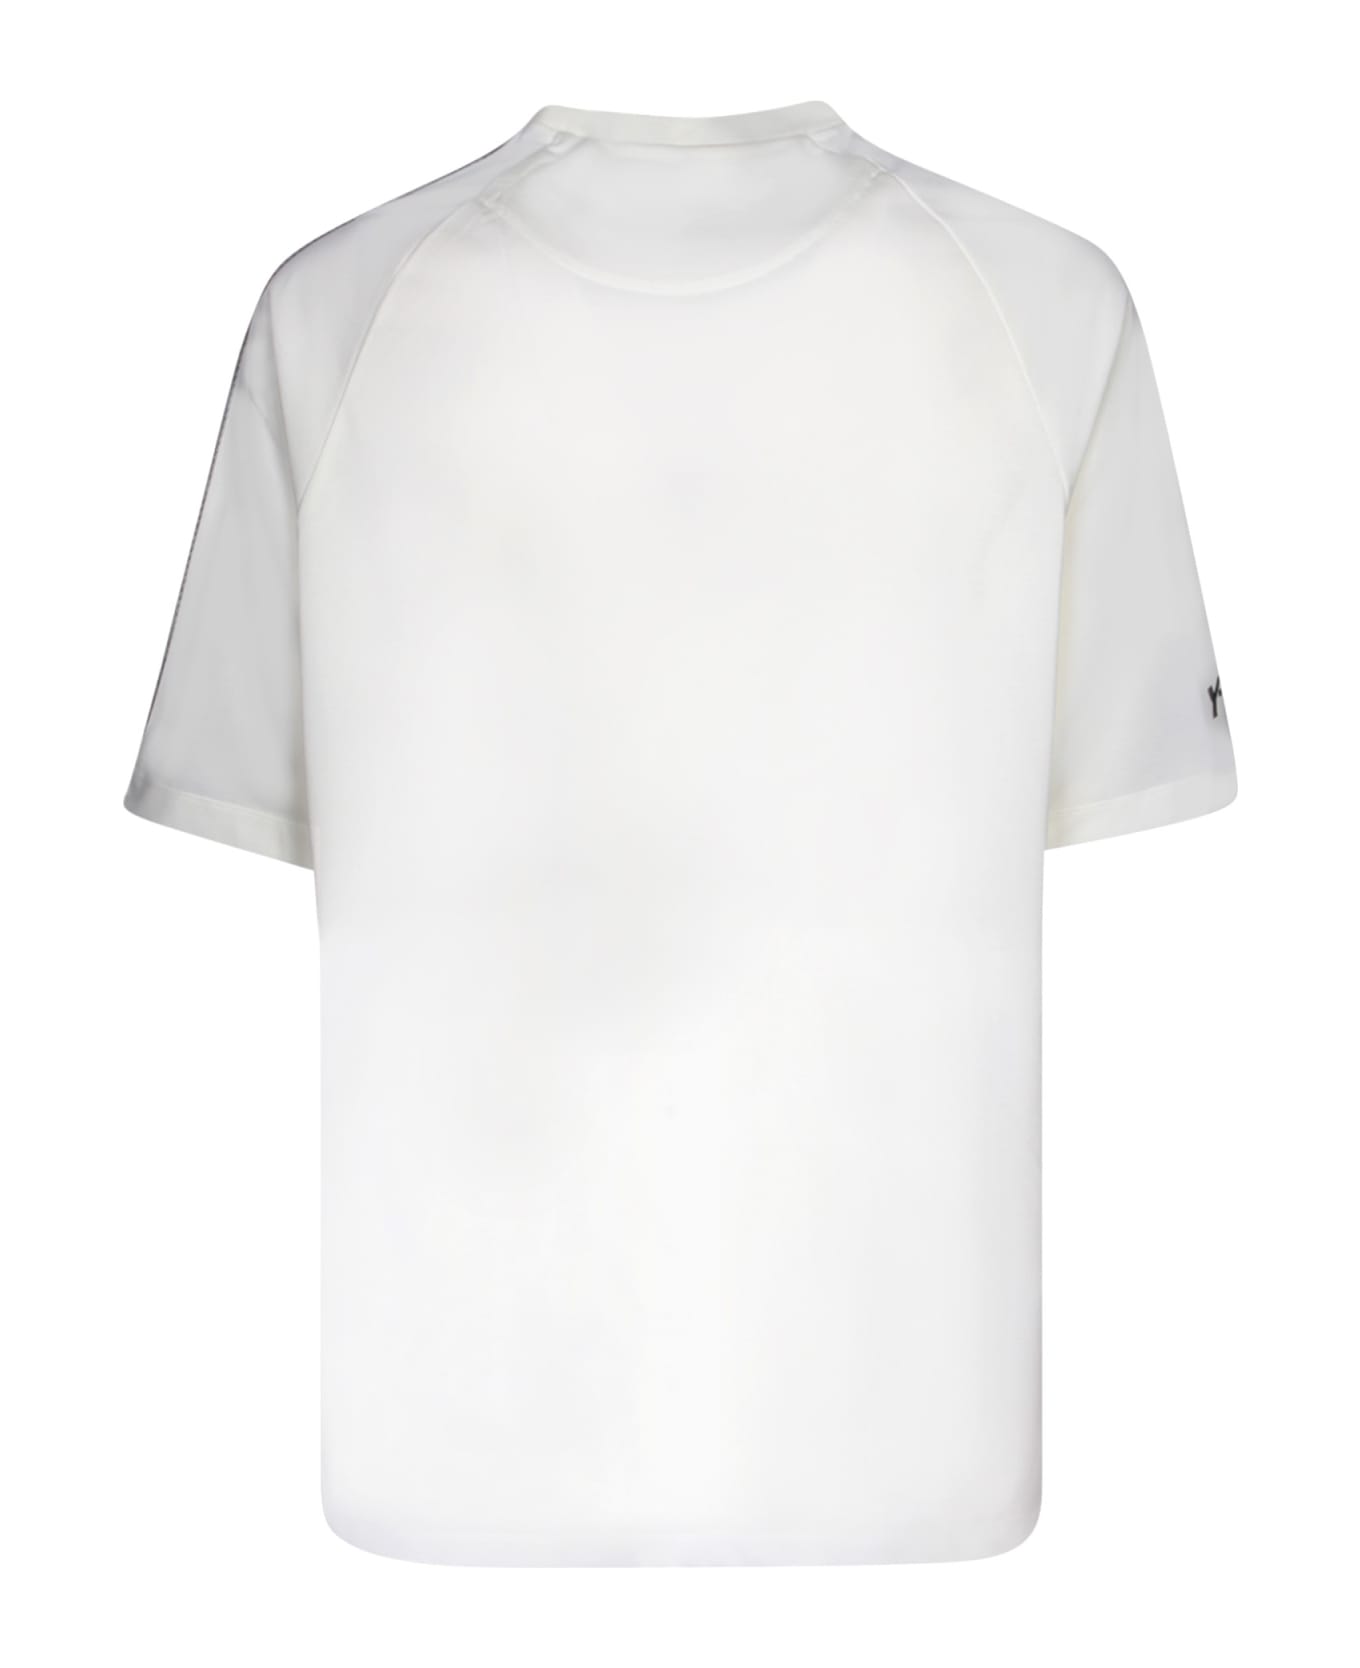 Y-3 Adidas Y-3 3s White T-shirt - White